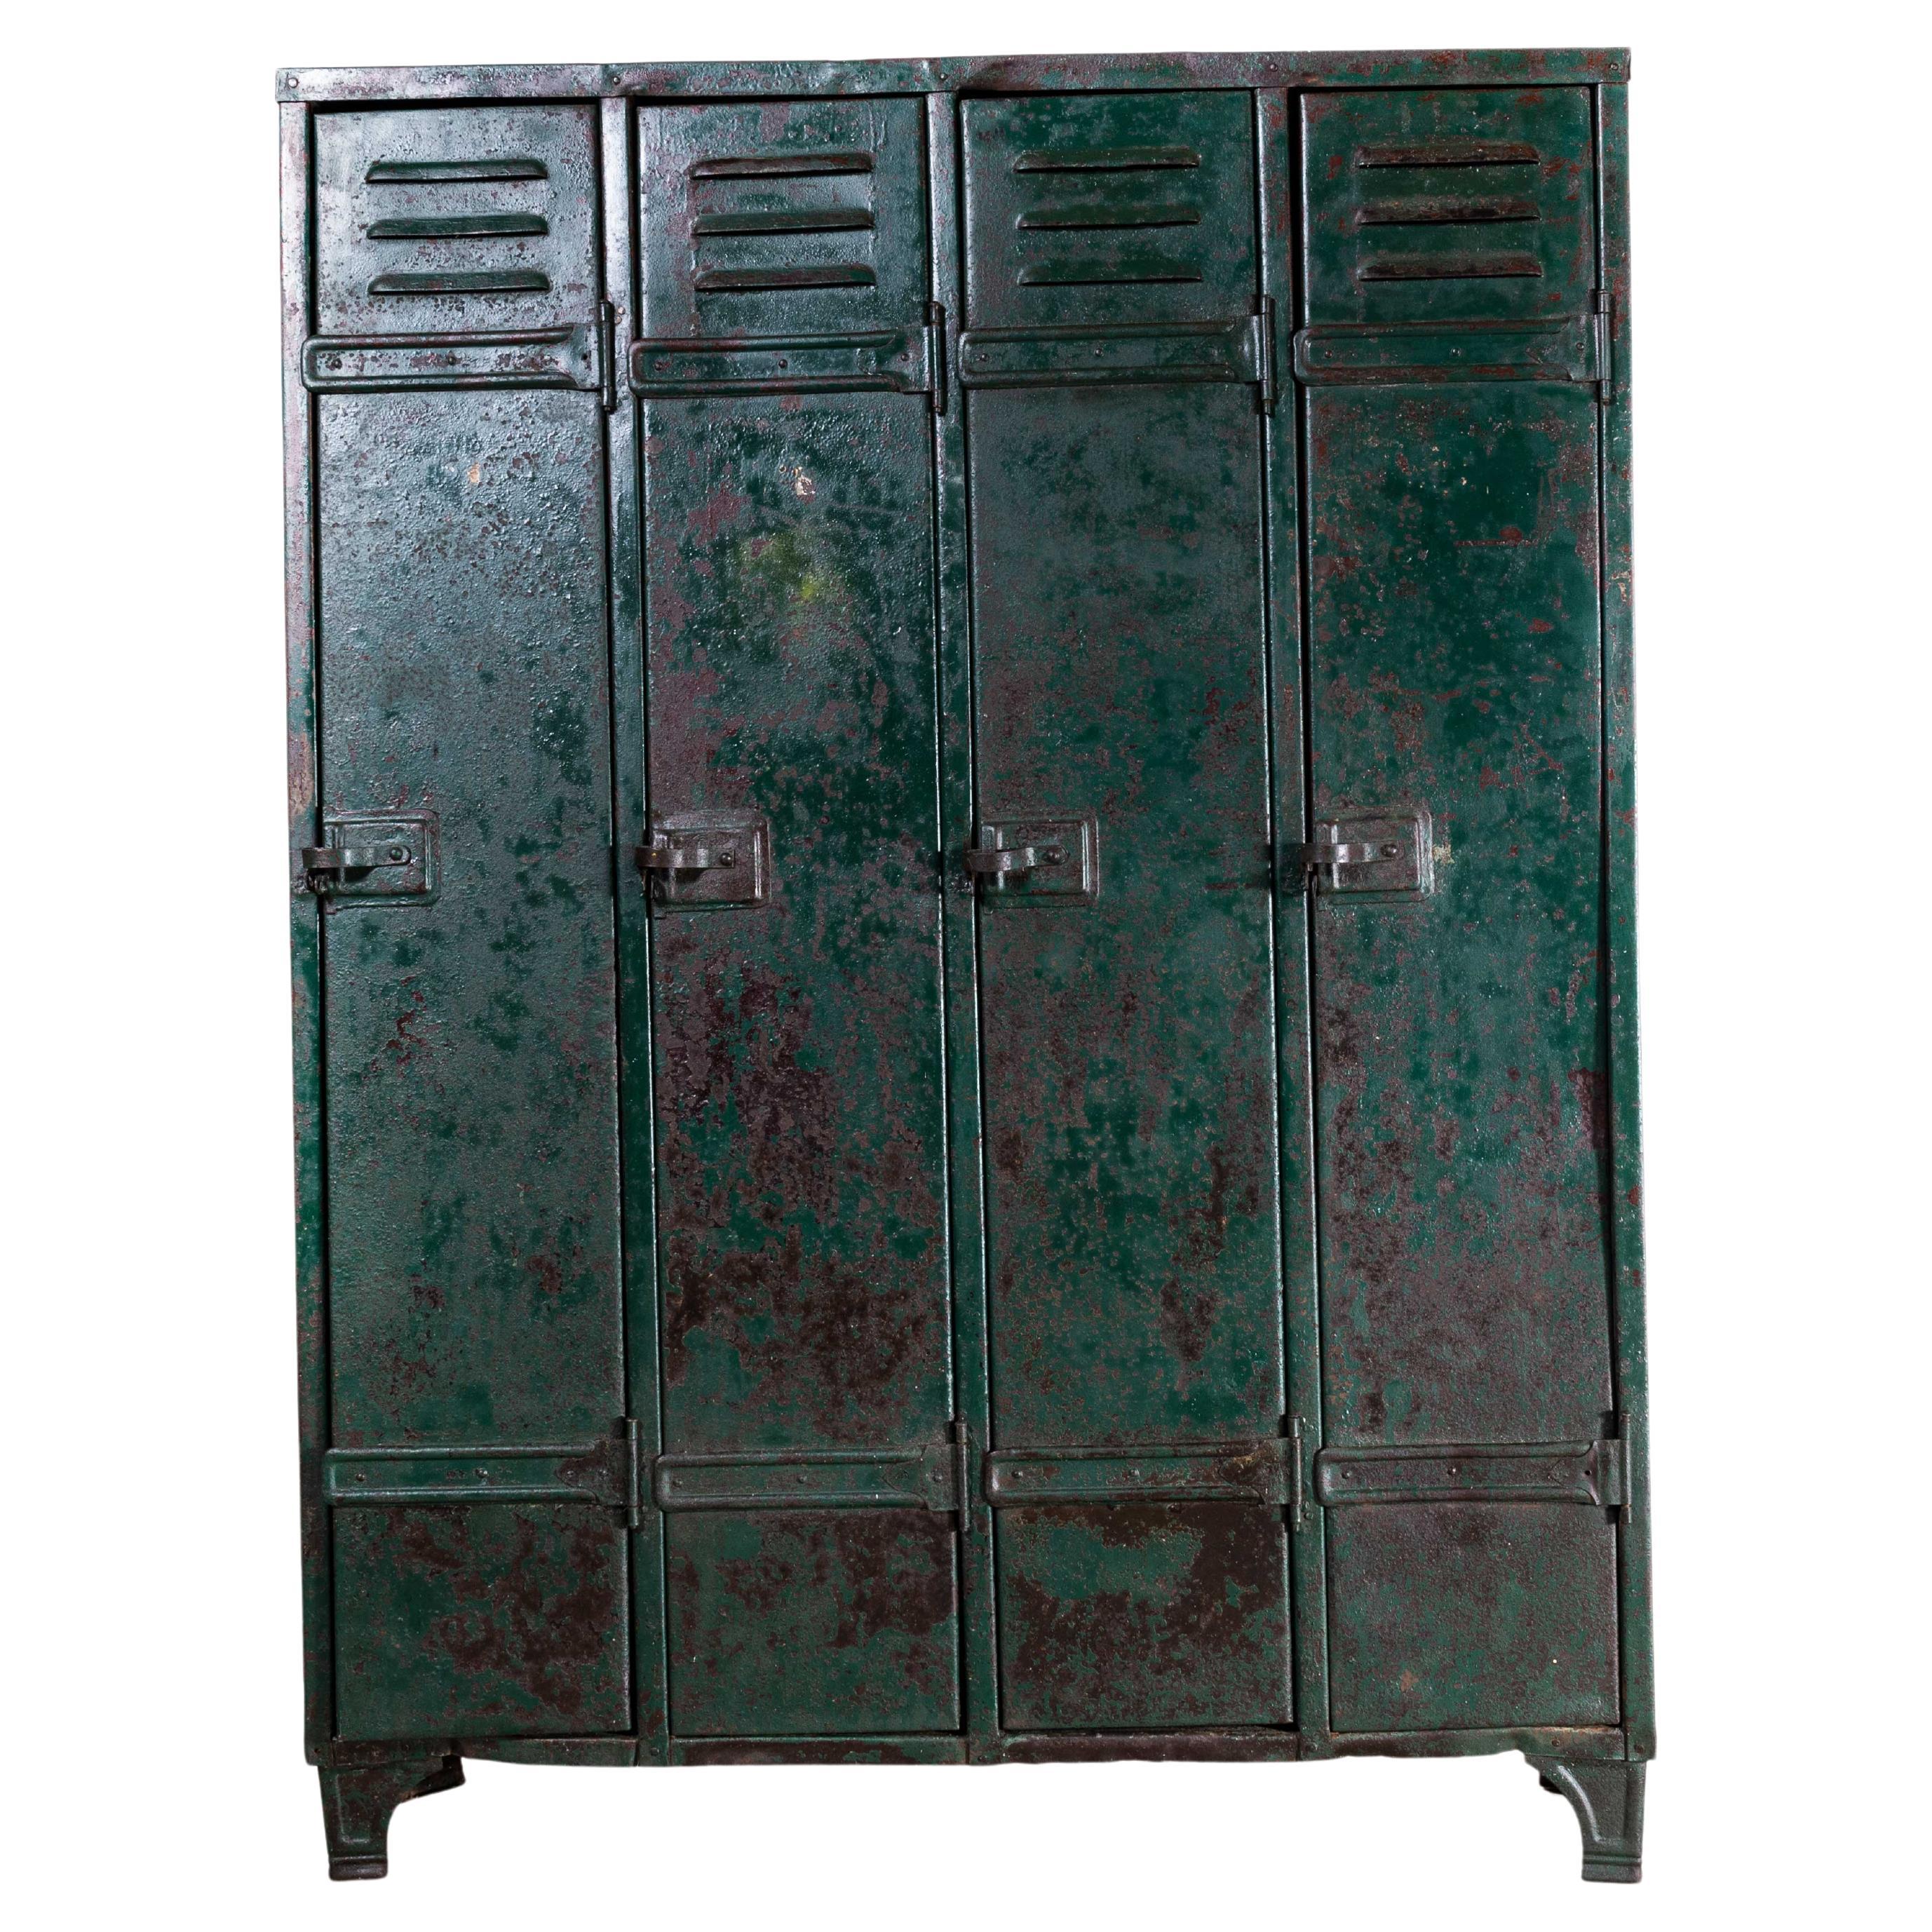 1940s Heavy Duty French Steel Industrial Locker, Four Door For Sale